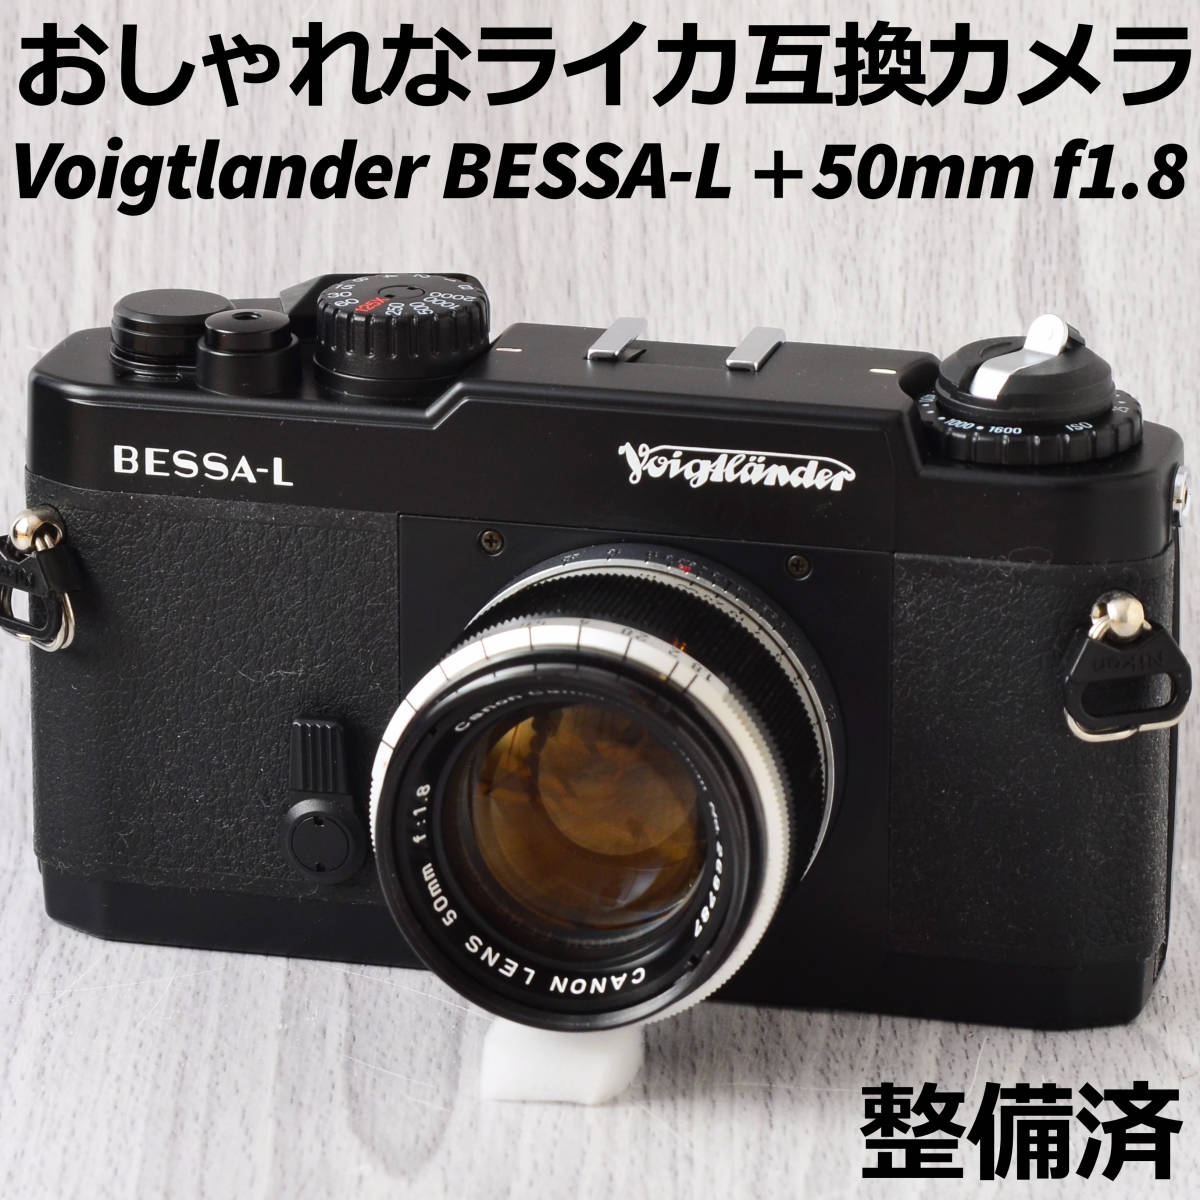 【全商品オープニング価格 特別価格】 Voigtlander BESSA-L 整備済 f1.8 50mm Canon 黒 その他